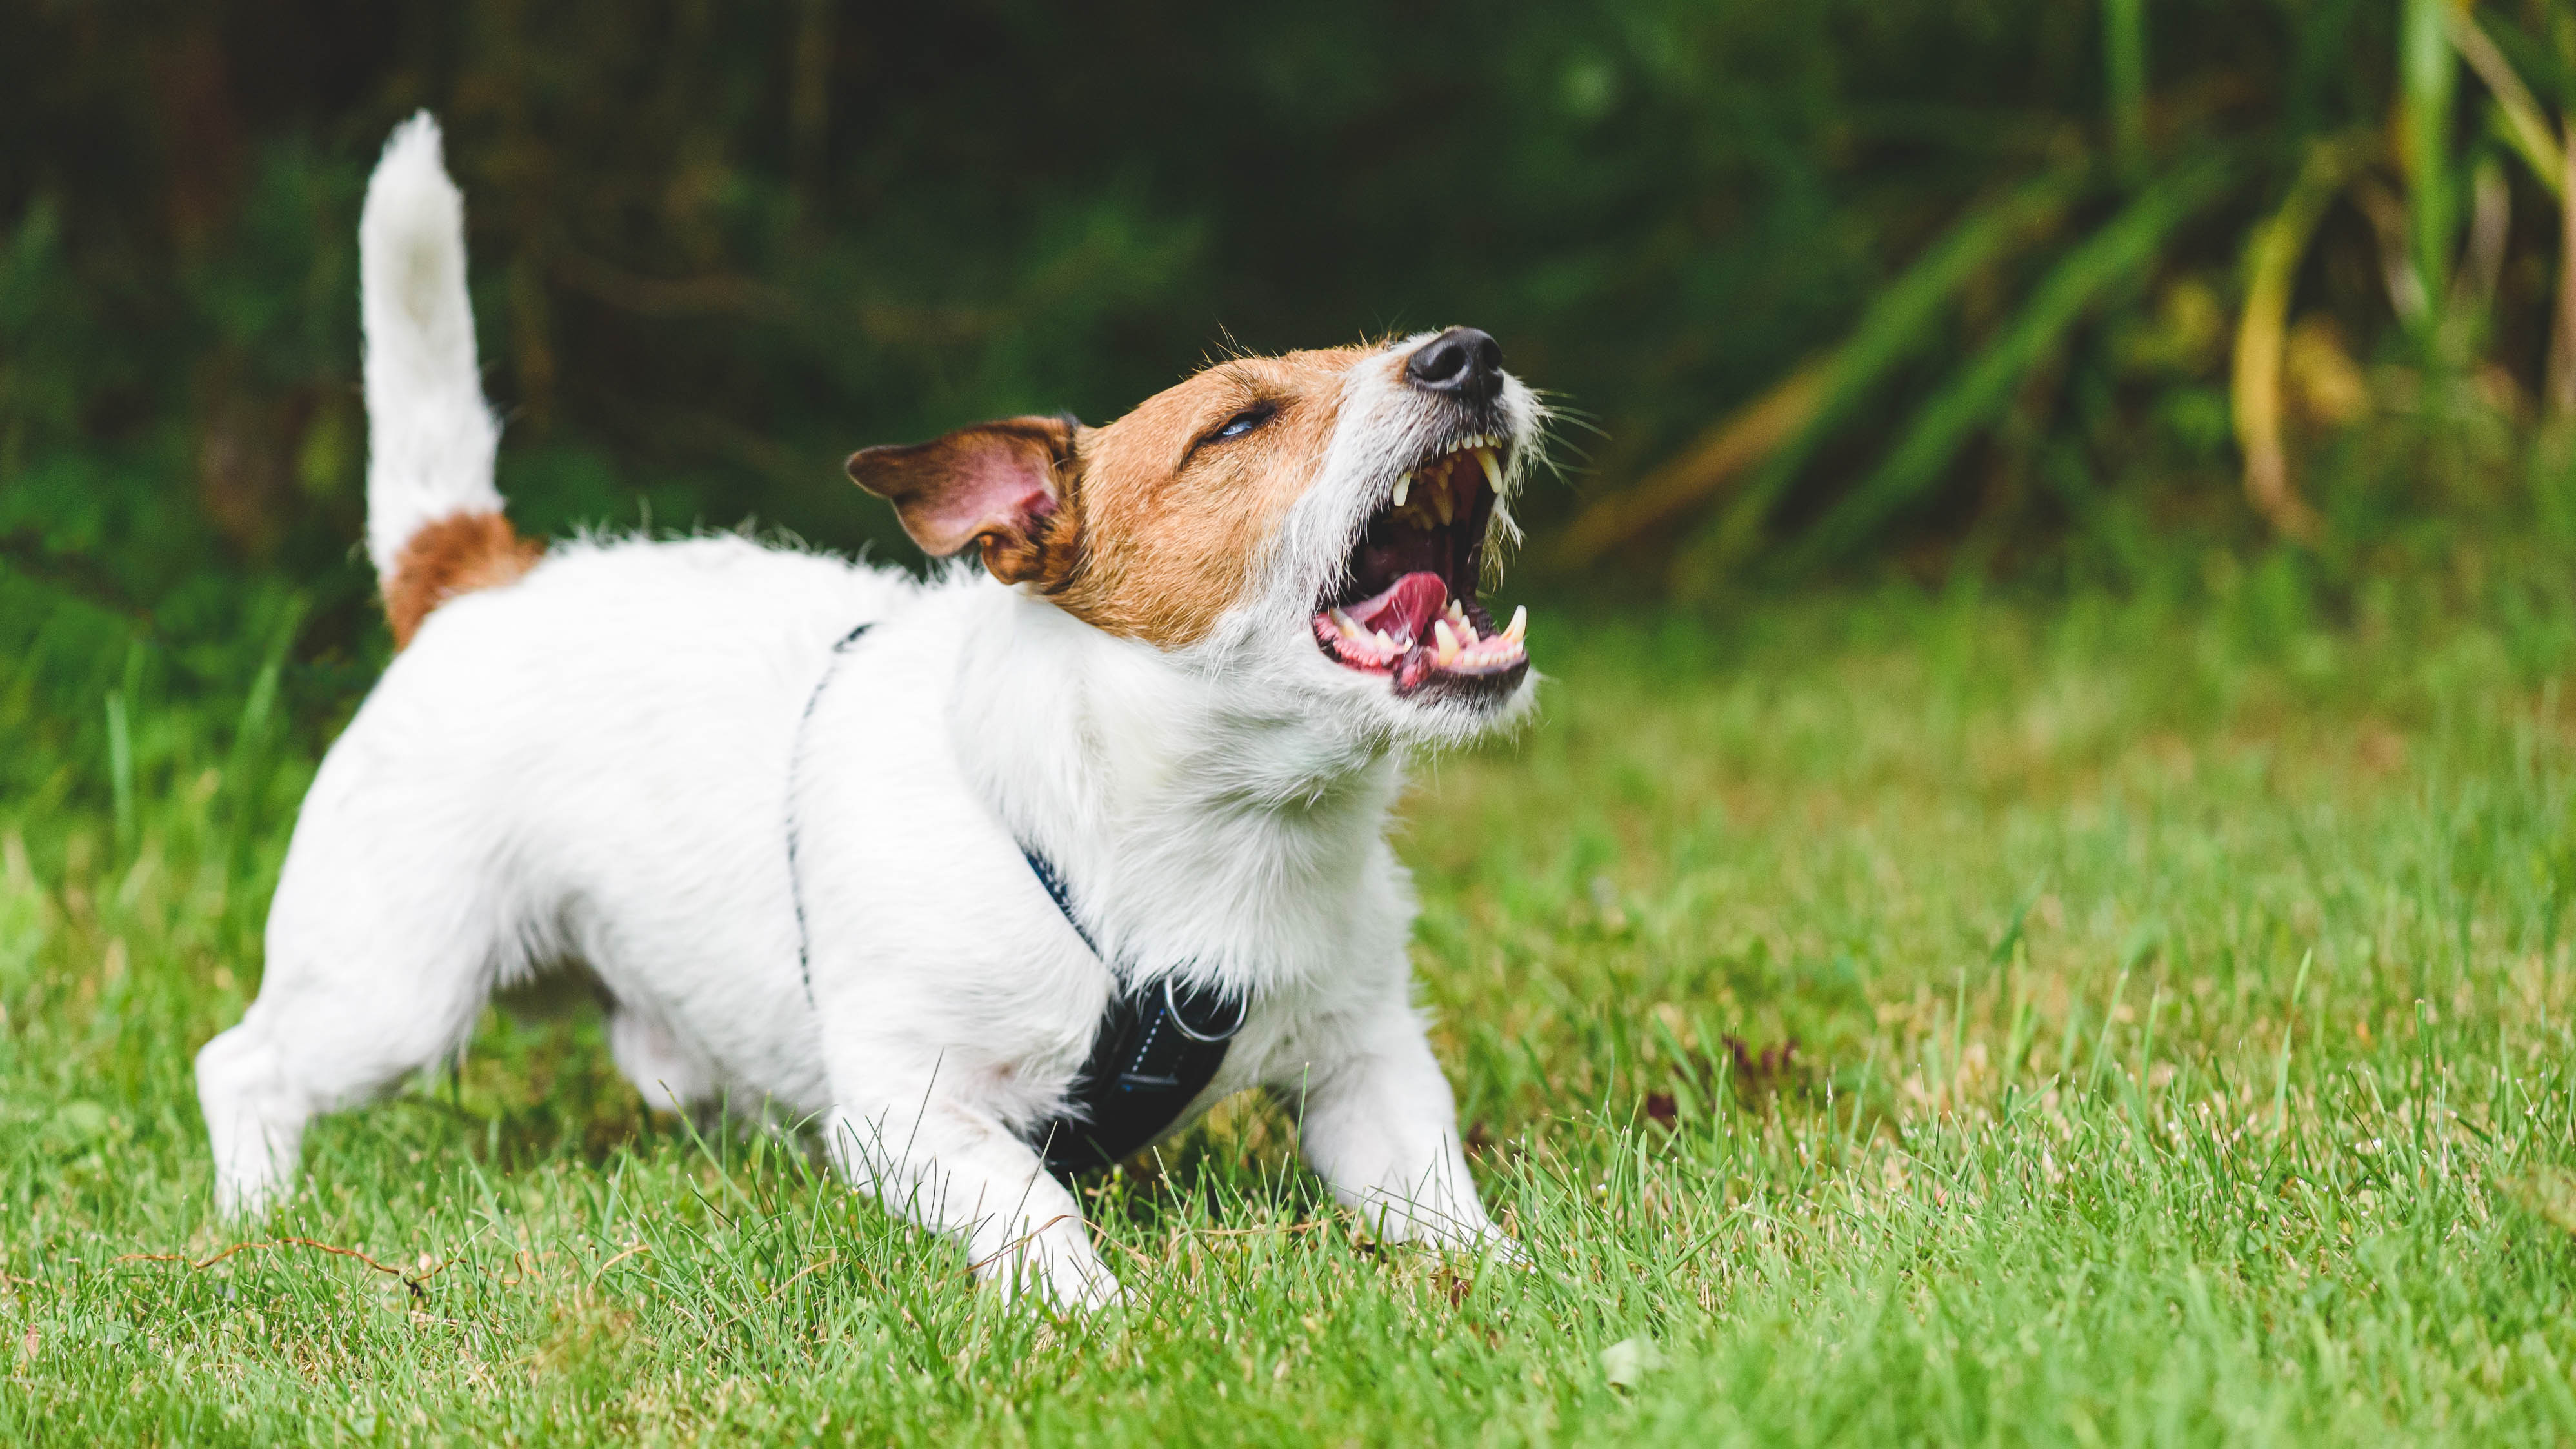 A dog barking on a lawn